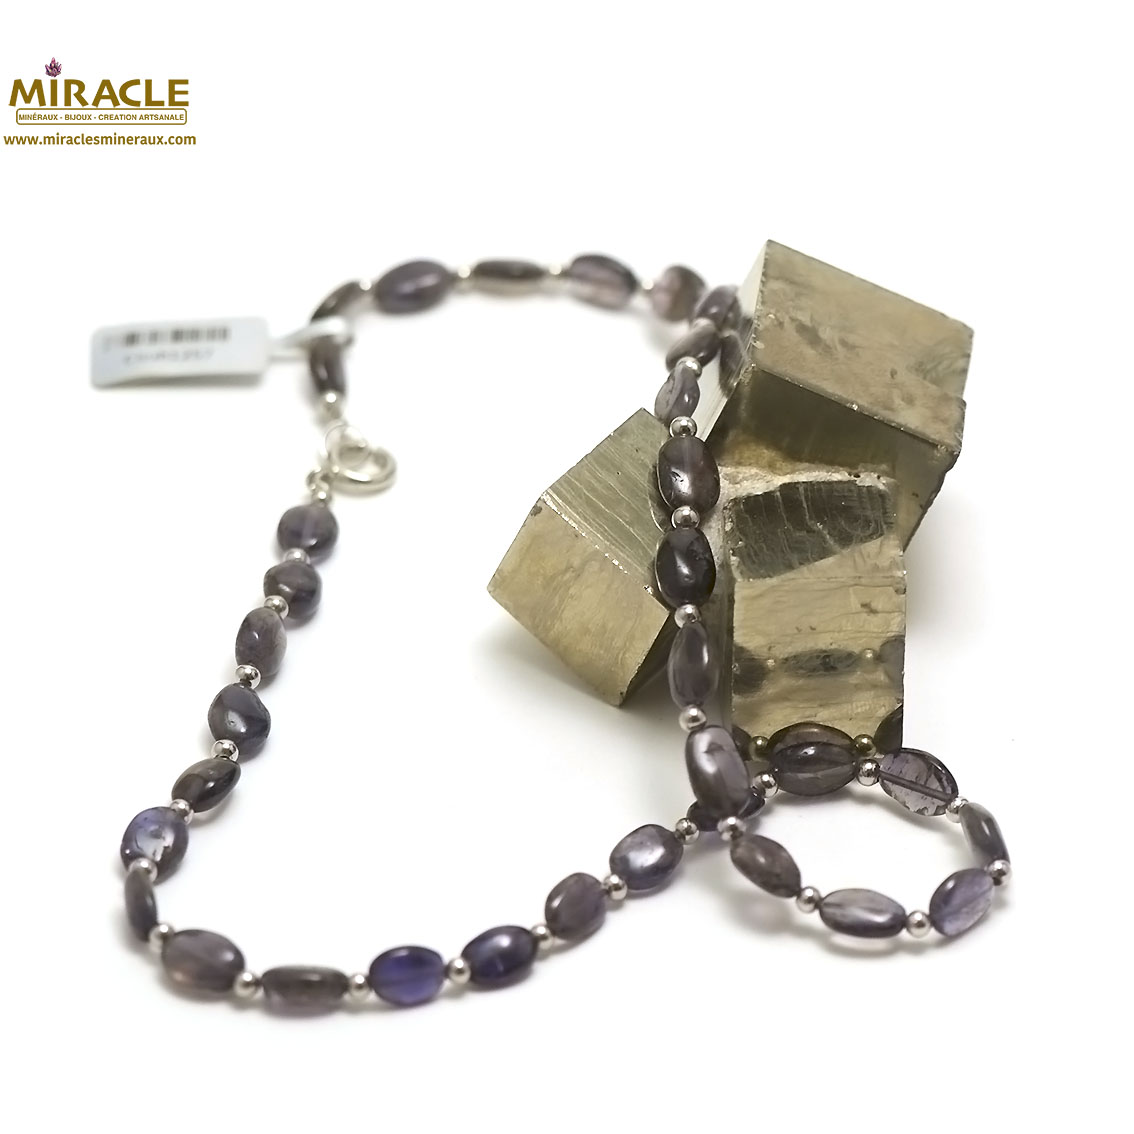 A palet oval perle argenté 1 collier en pierre naturelle de iolite